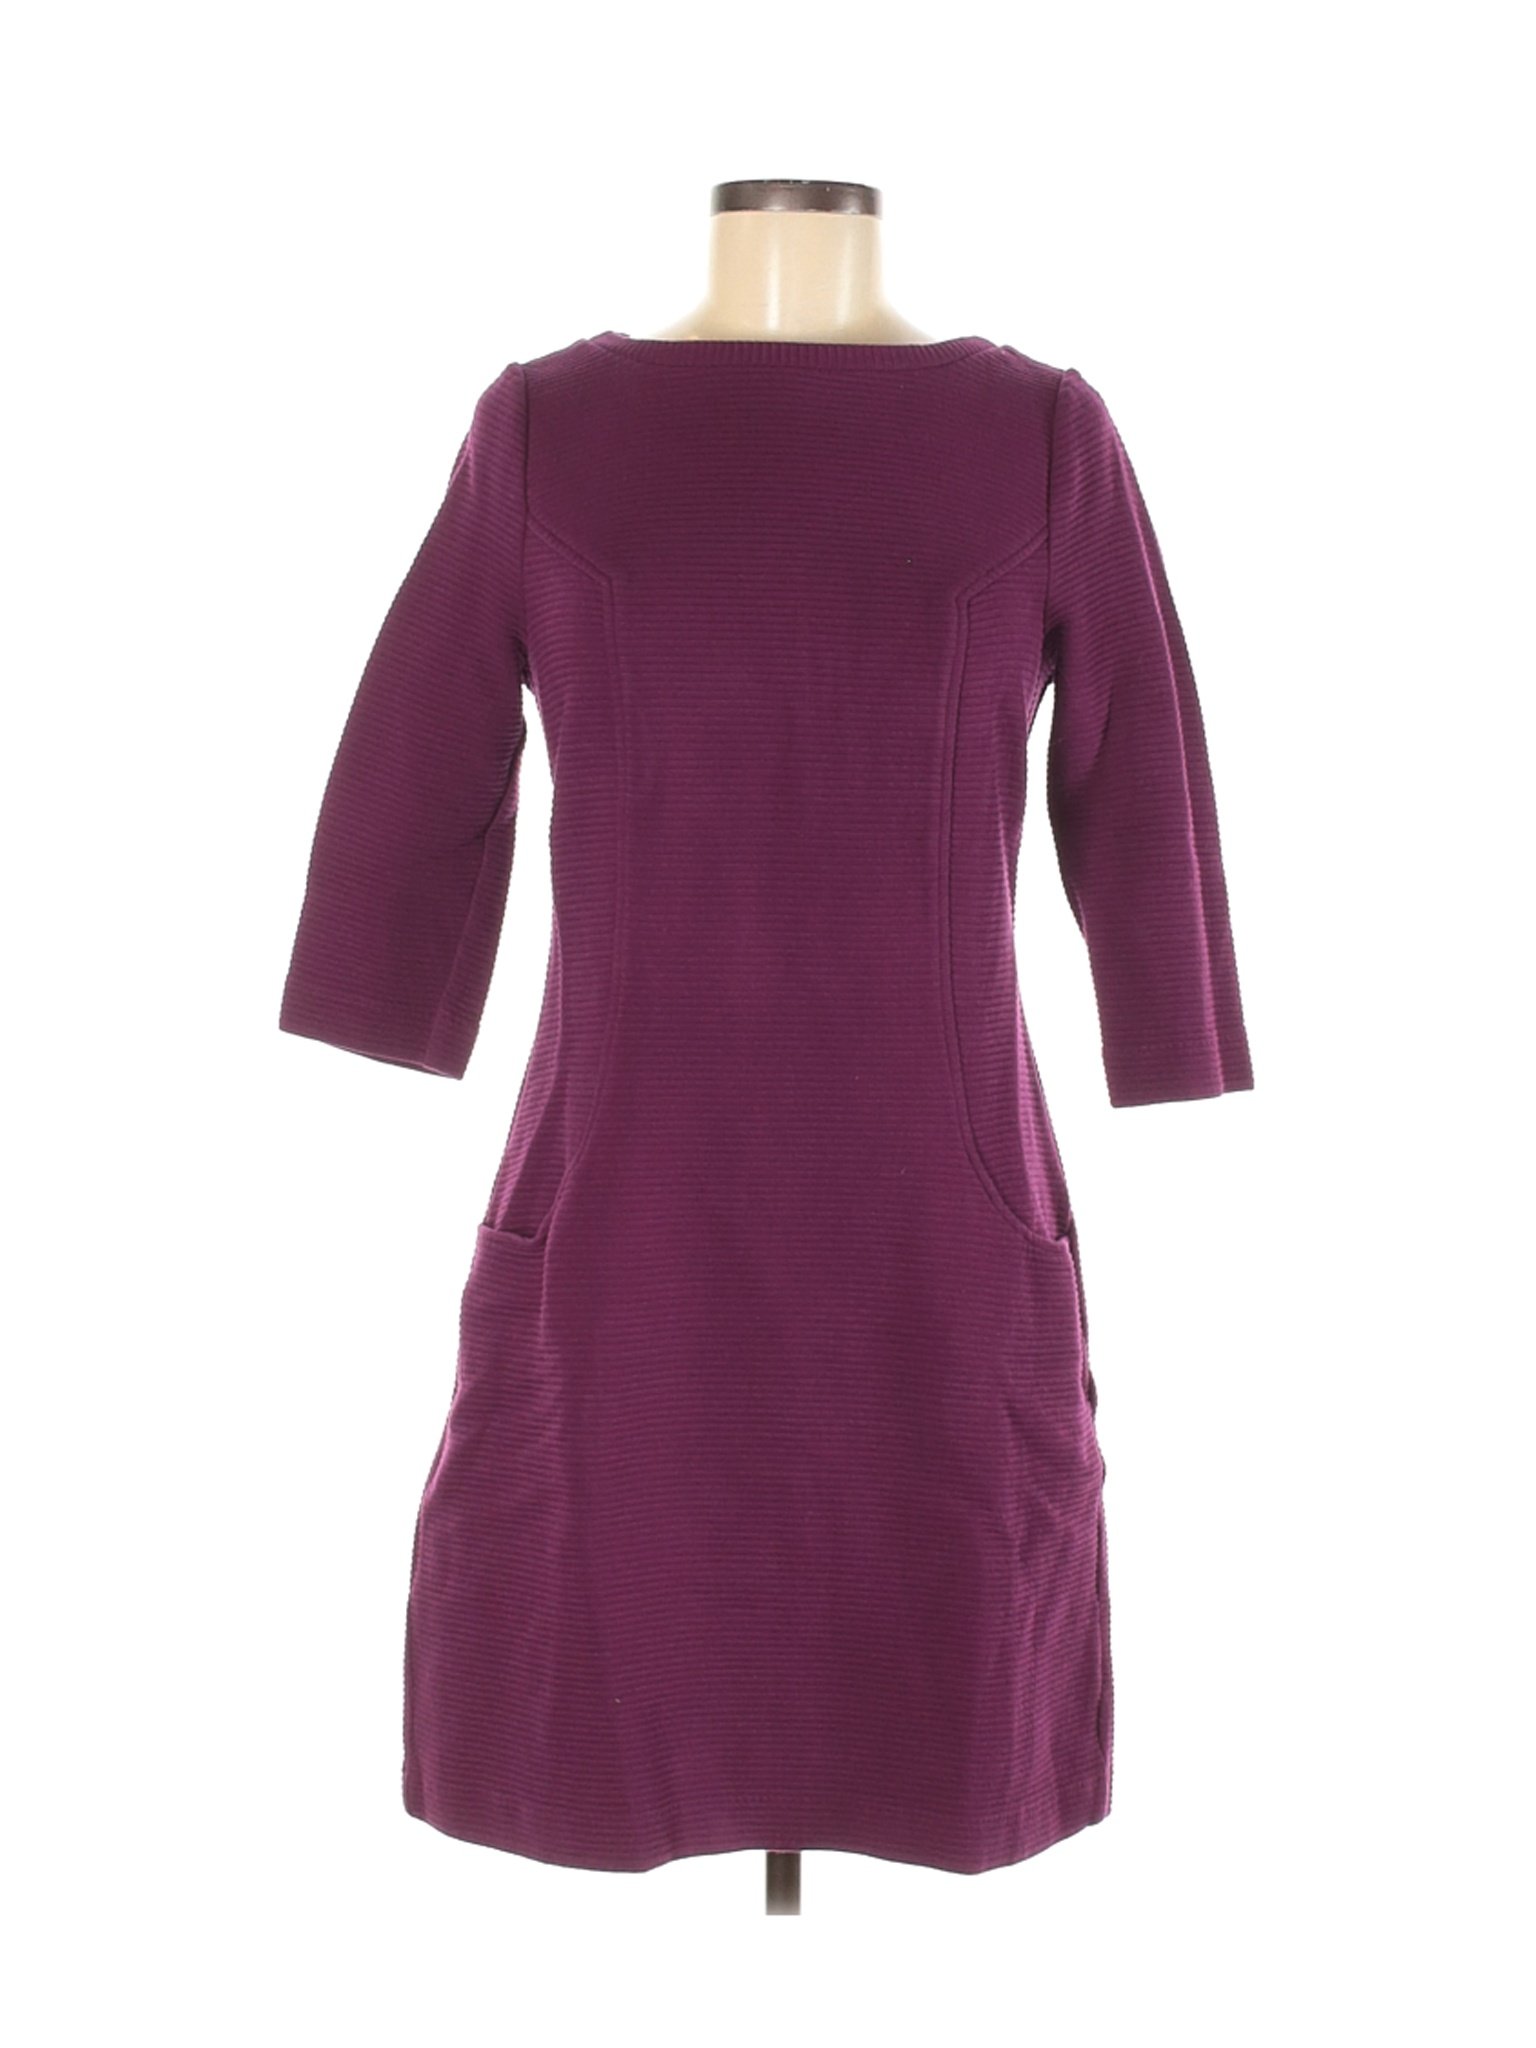 Boden Women Purple Casual Dress 8 | eBay